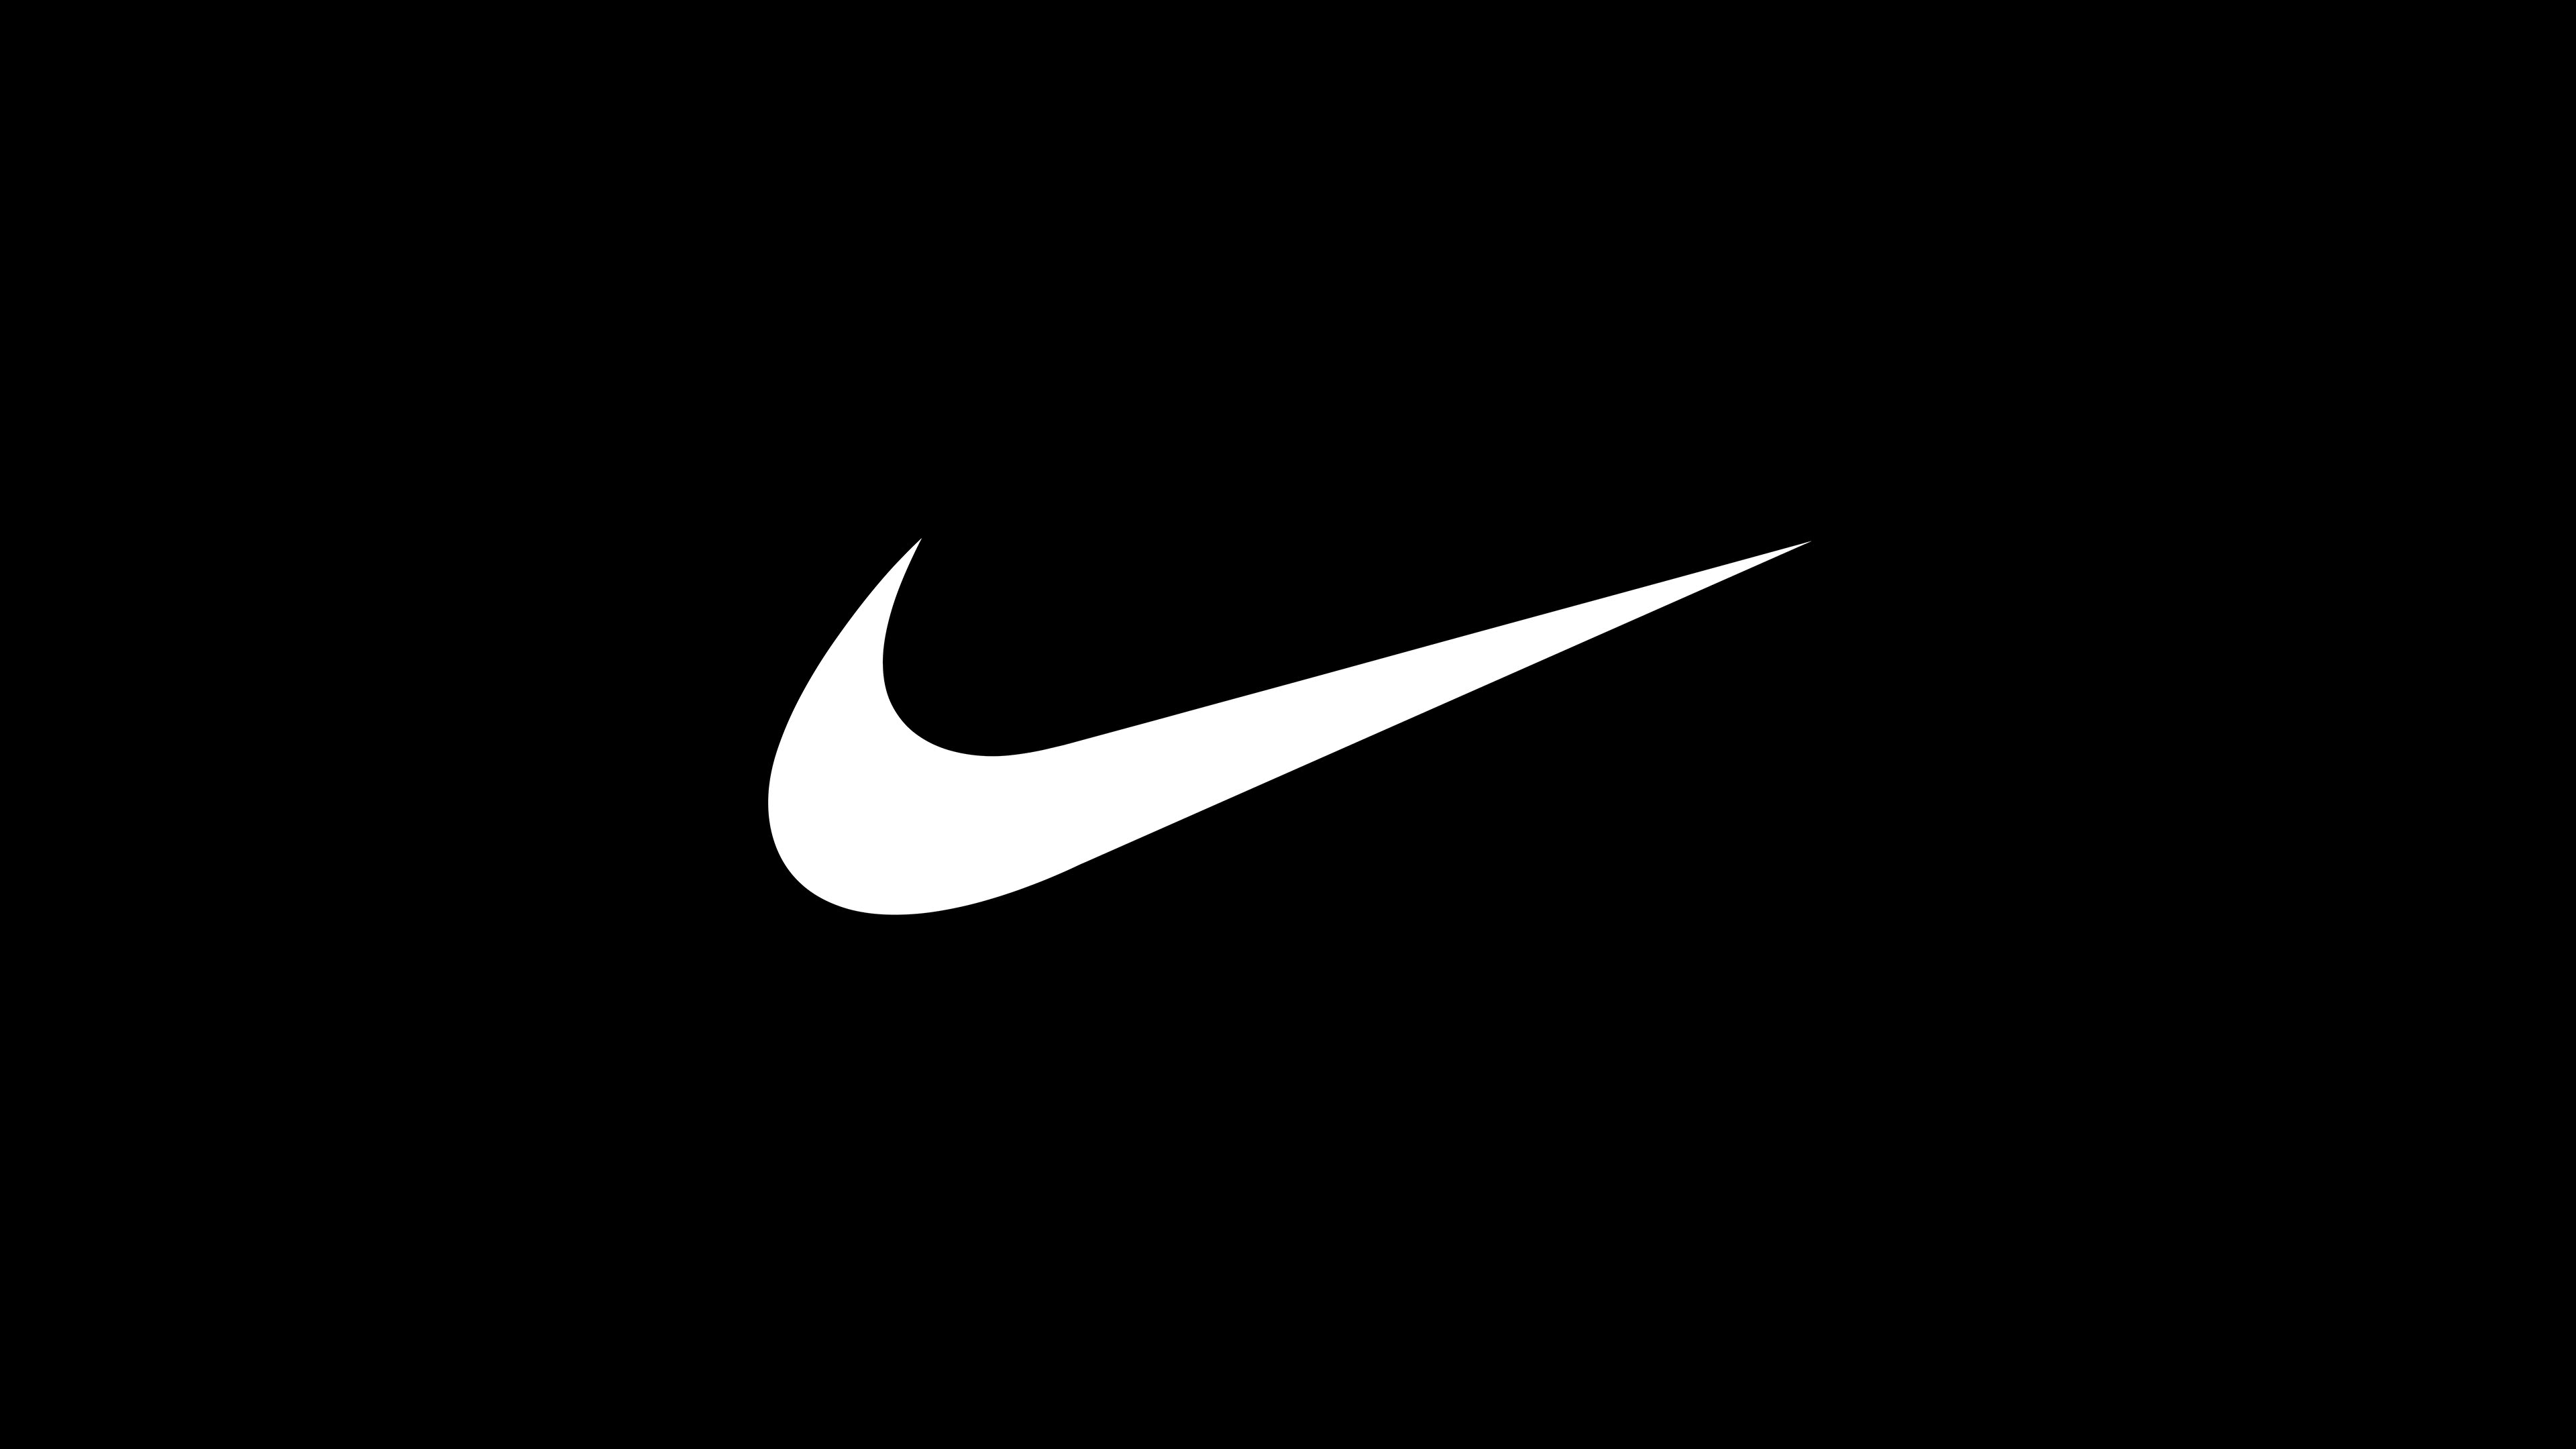 Với Nike Logo Wallpaper, bạn sẽ được truyền cảm hứng và năng lượng cho ngày mới với hình nền điện thoại đẹp mắt này.